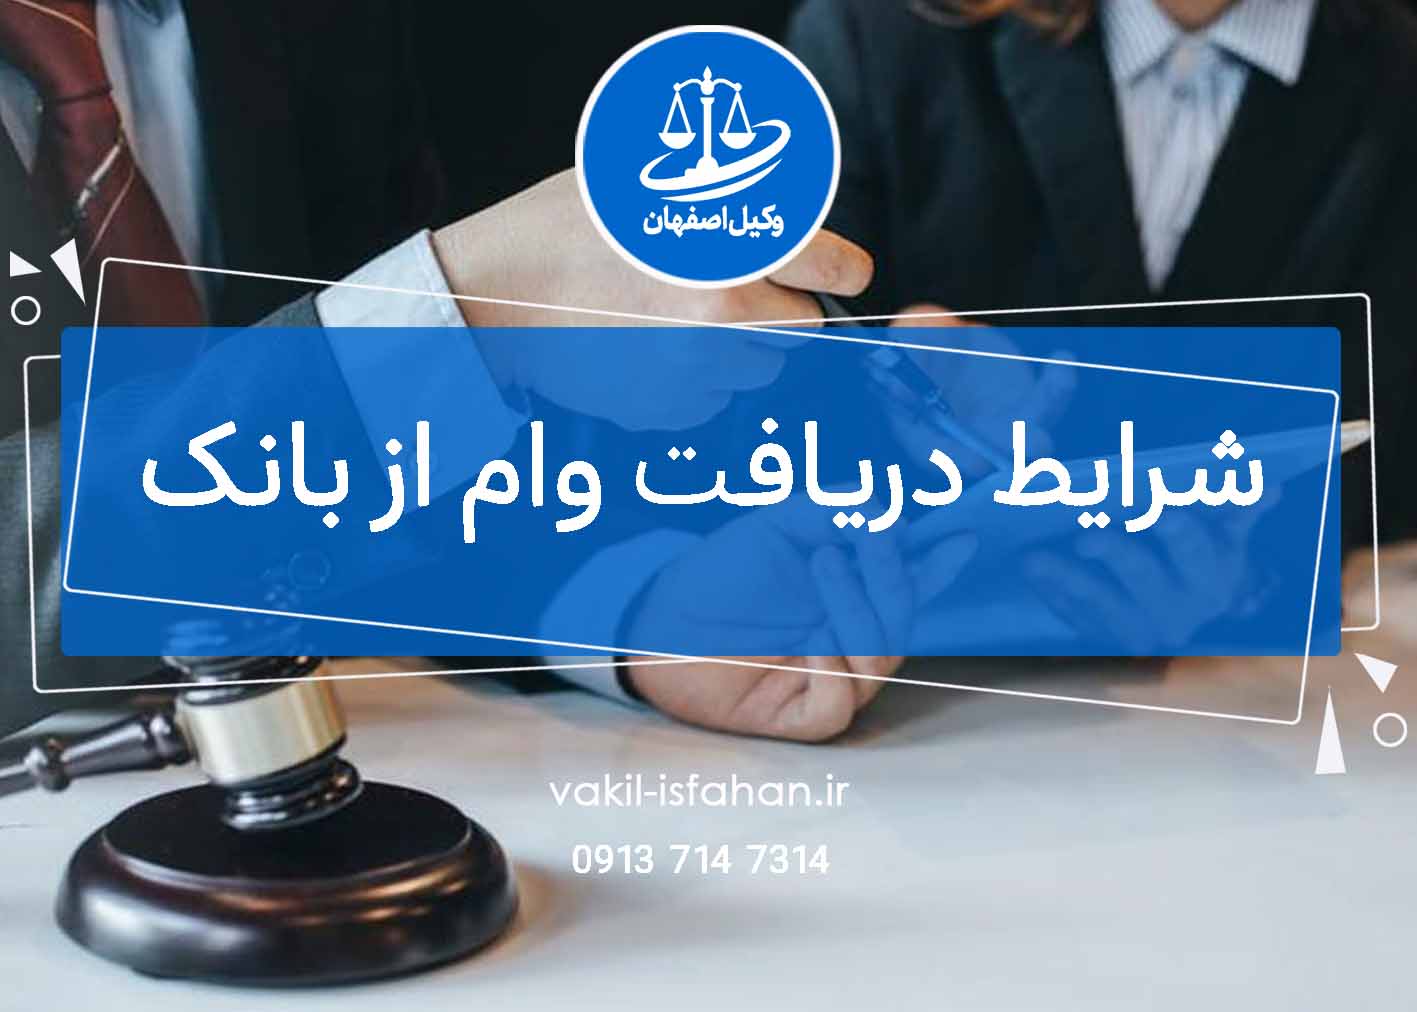 شرایط دریافت وام از بانک | وکیل اصفهان